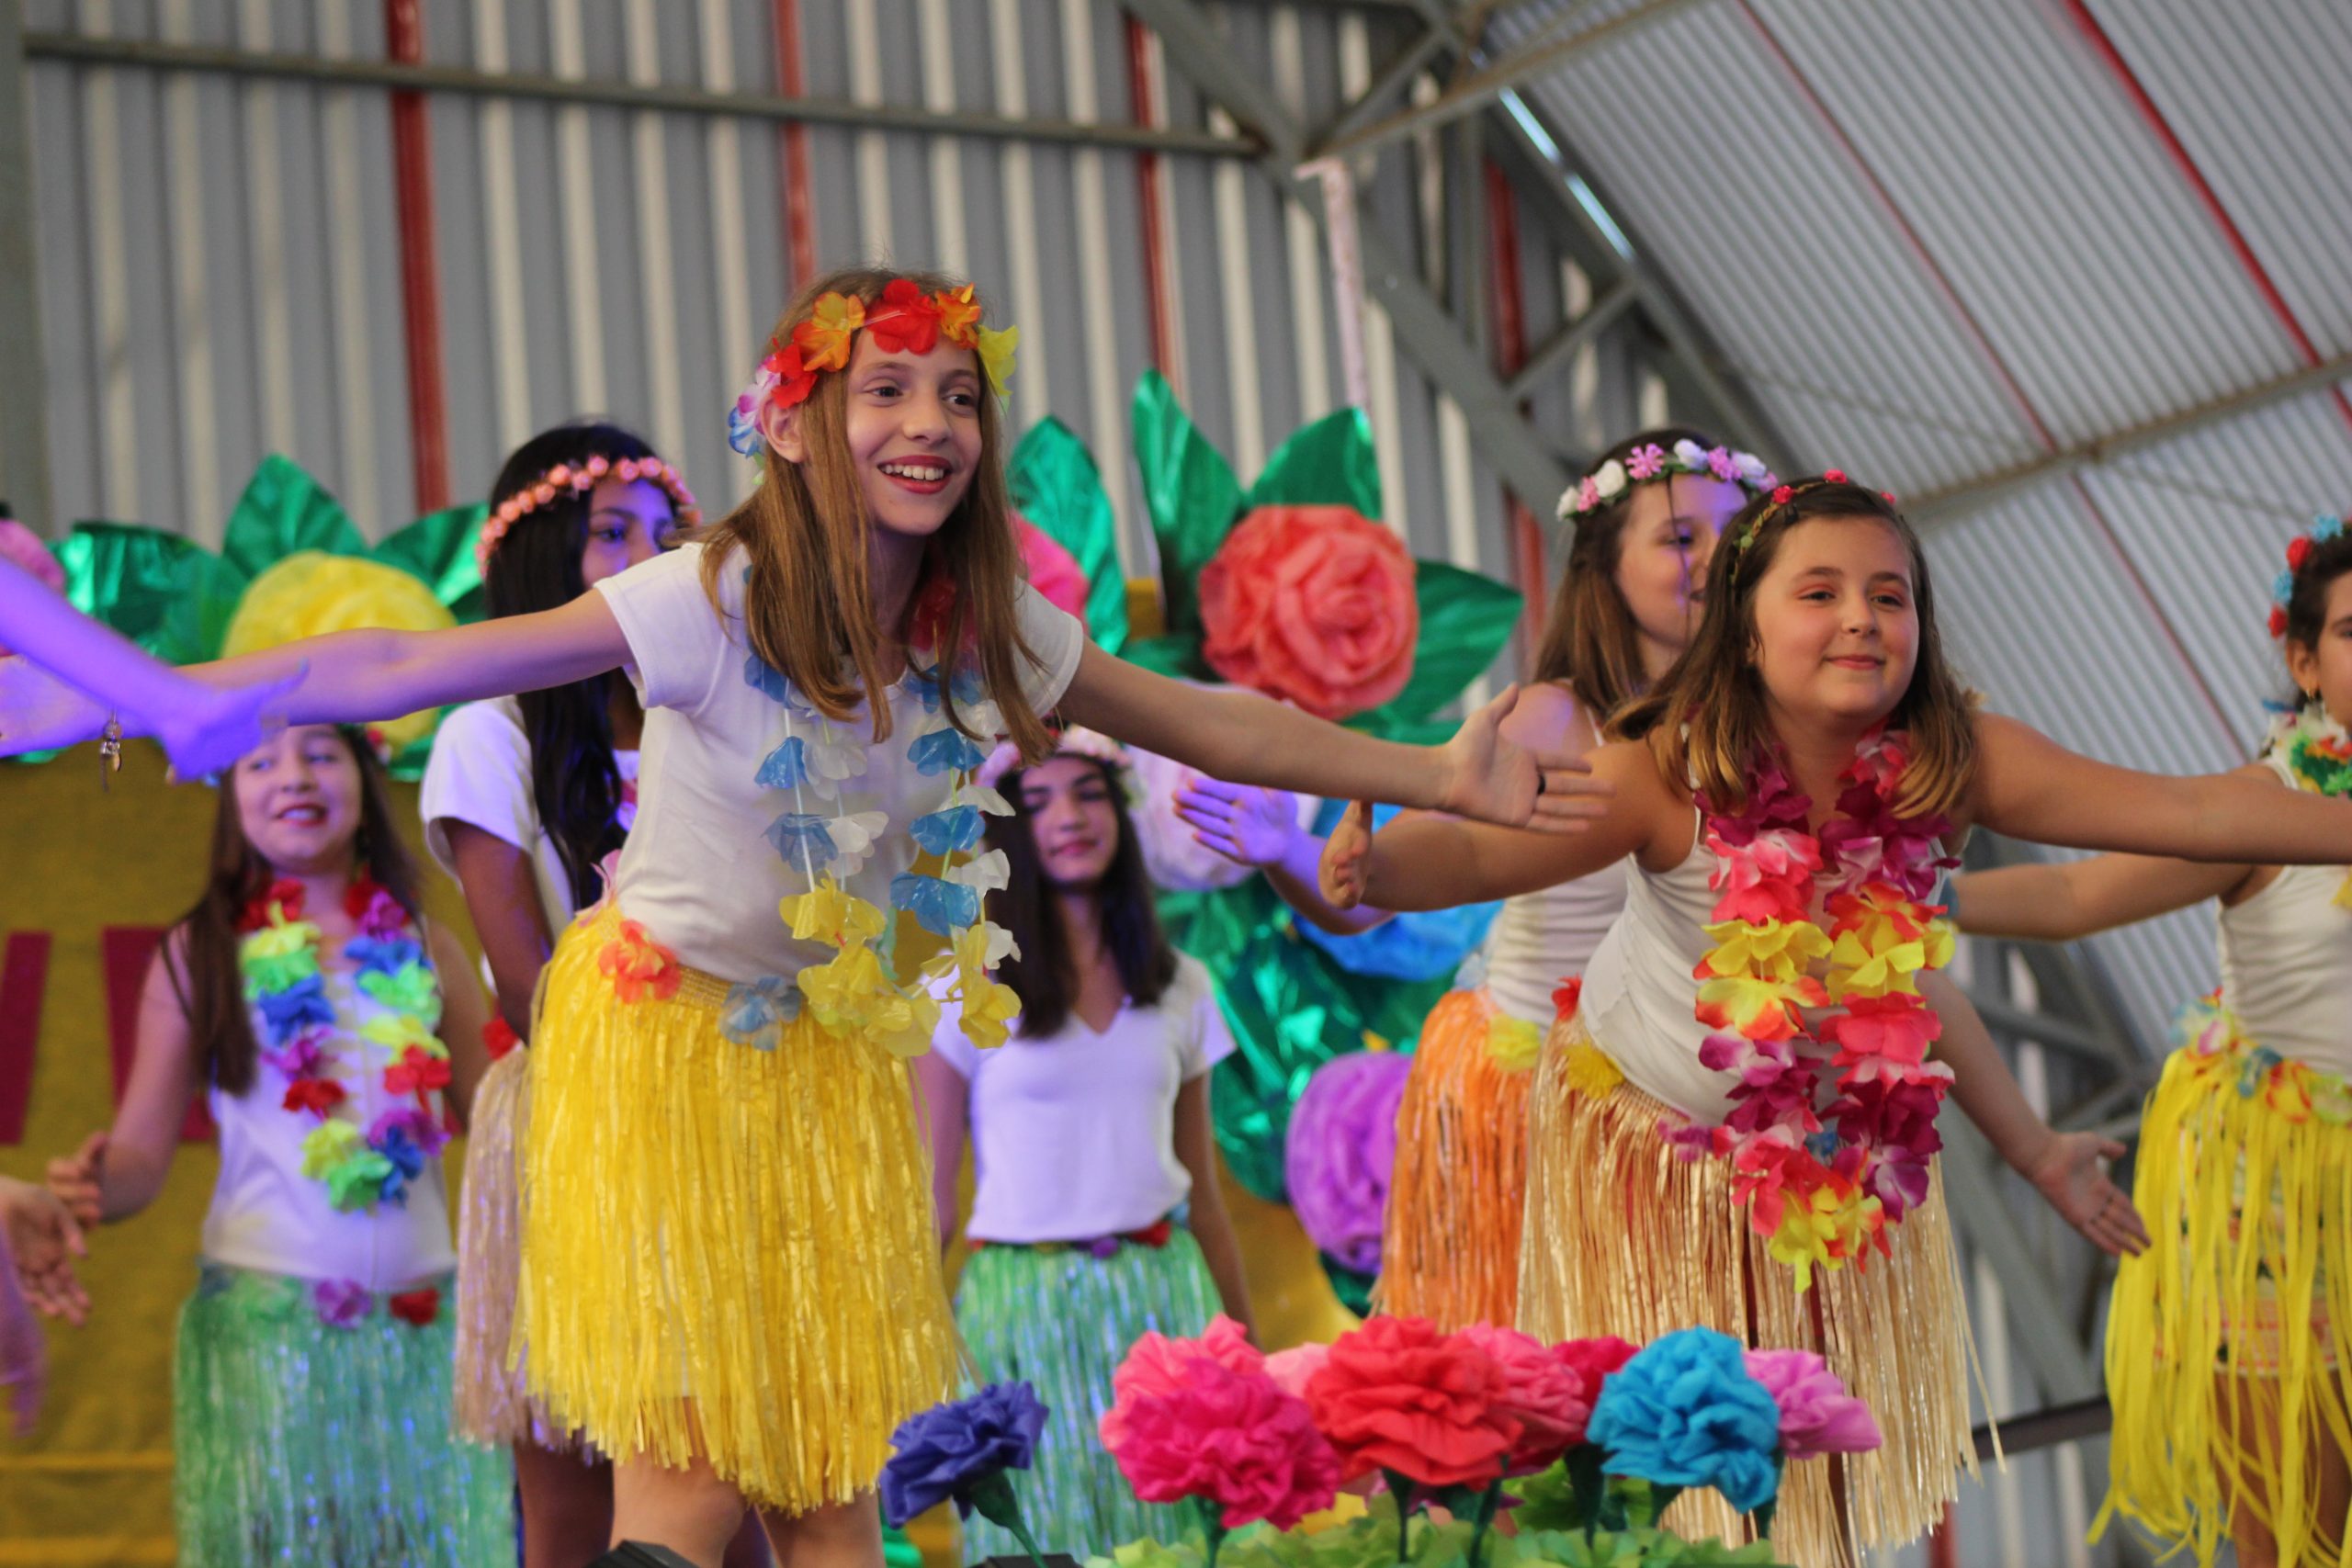 Neste ano, a tradicional “Festa da Primavera” acontecerá em três unidades escolares da Rede Municipal de Ensino